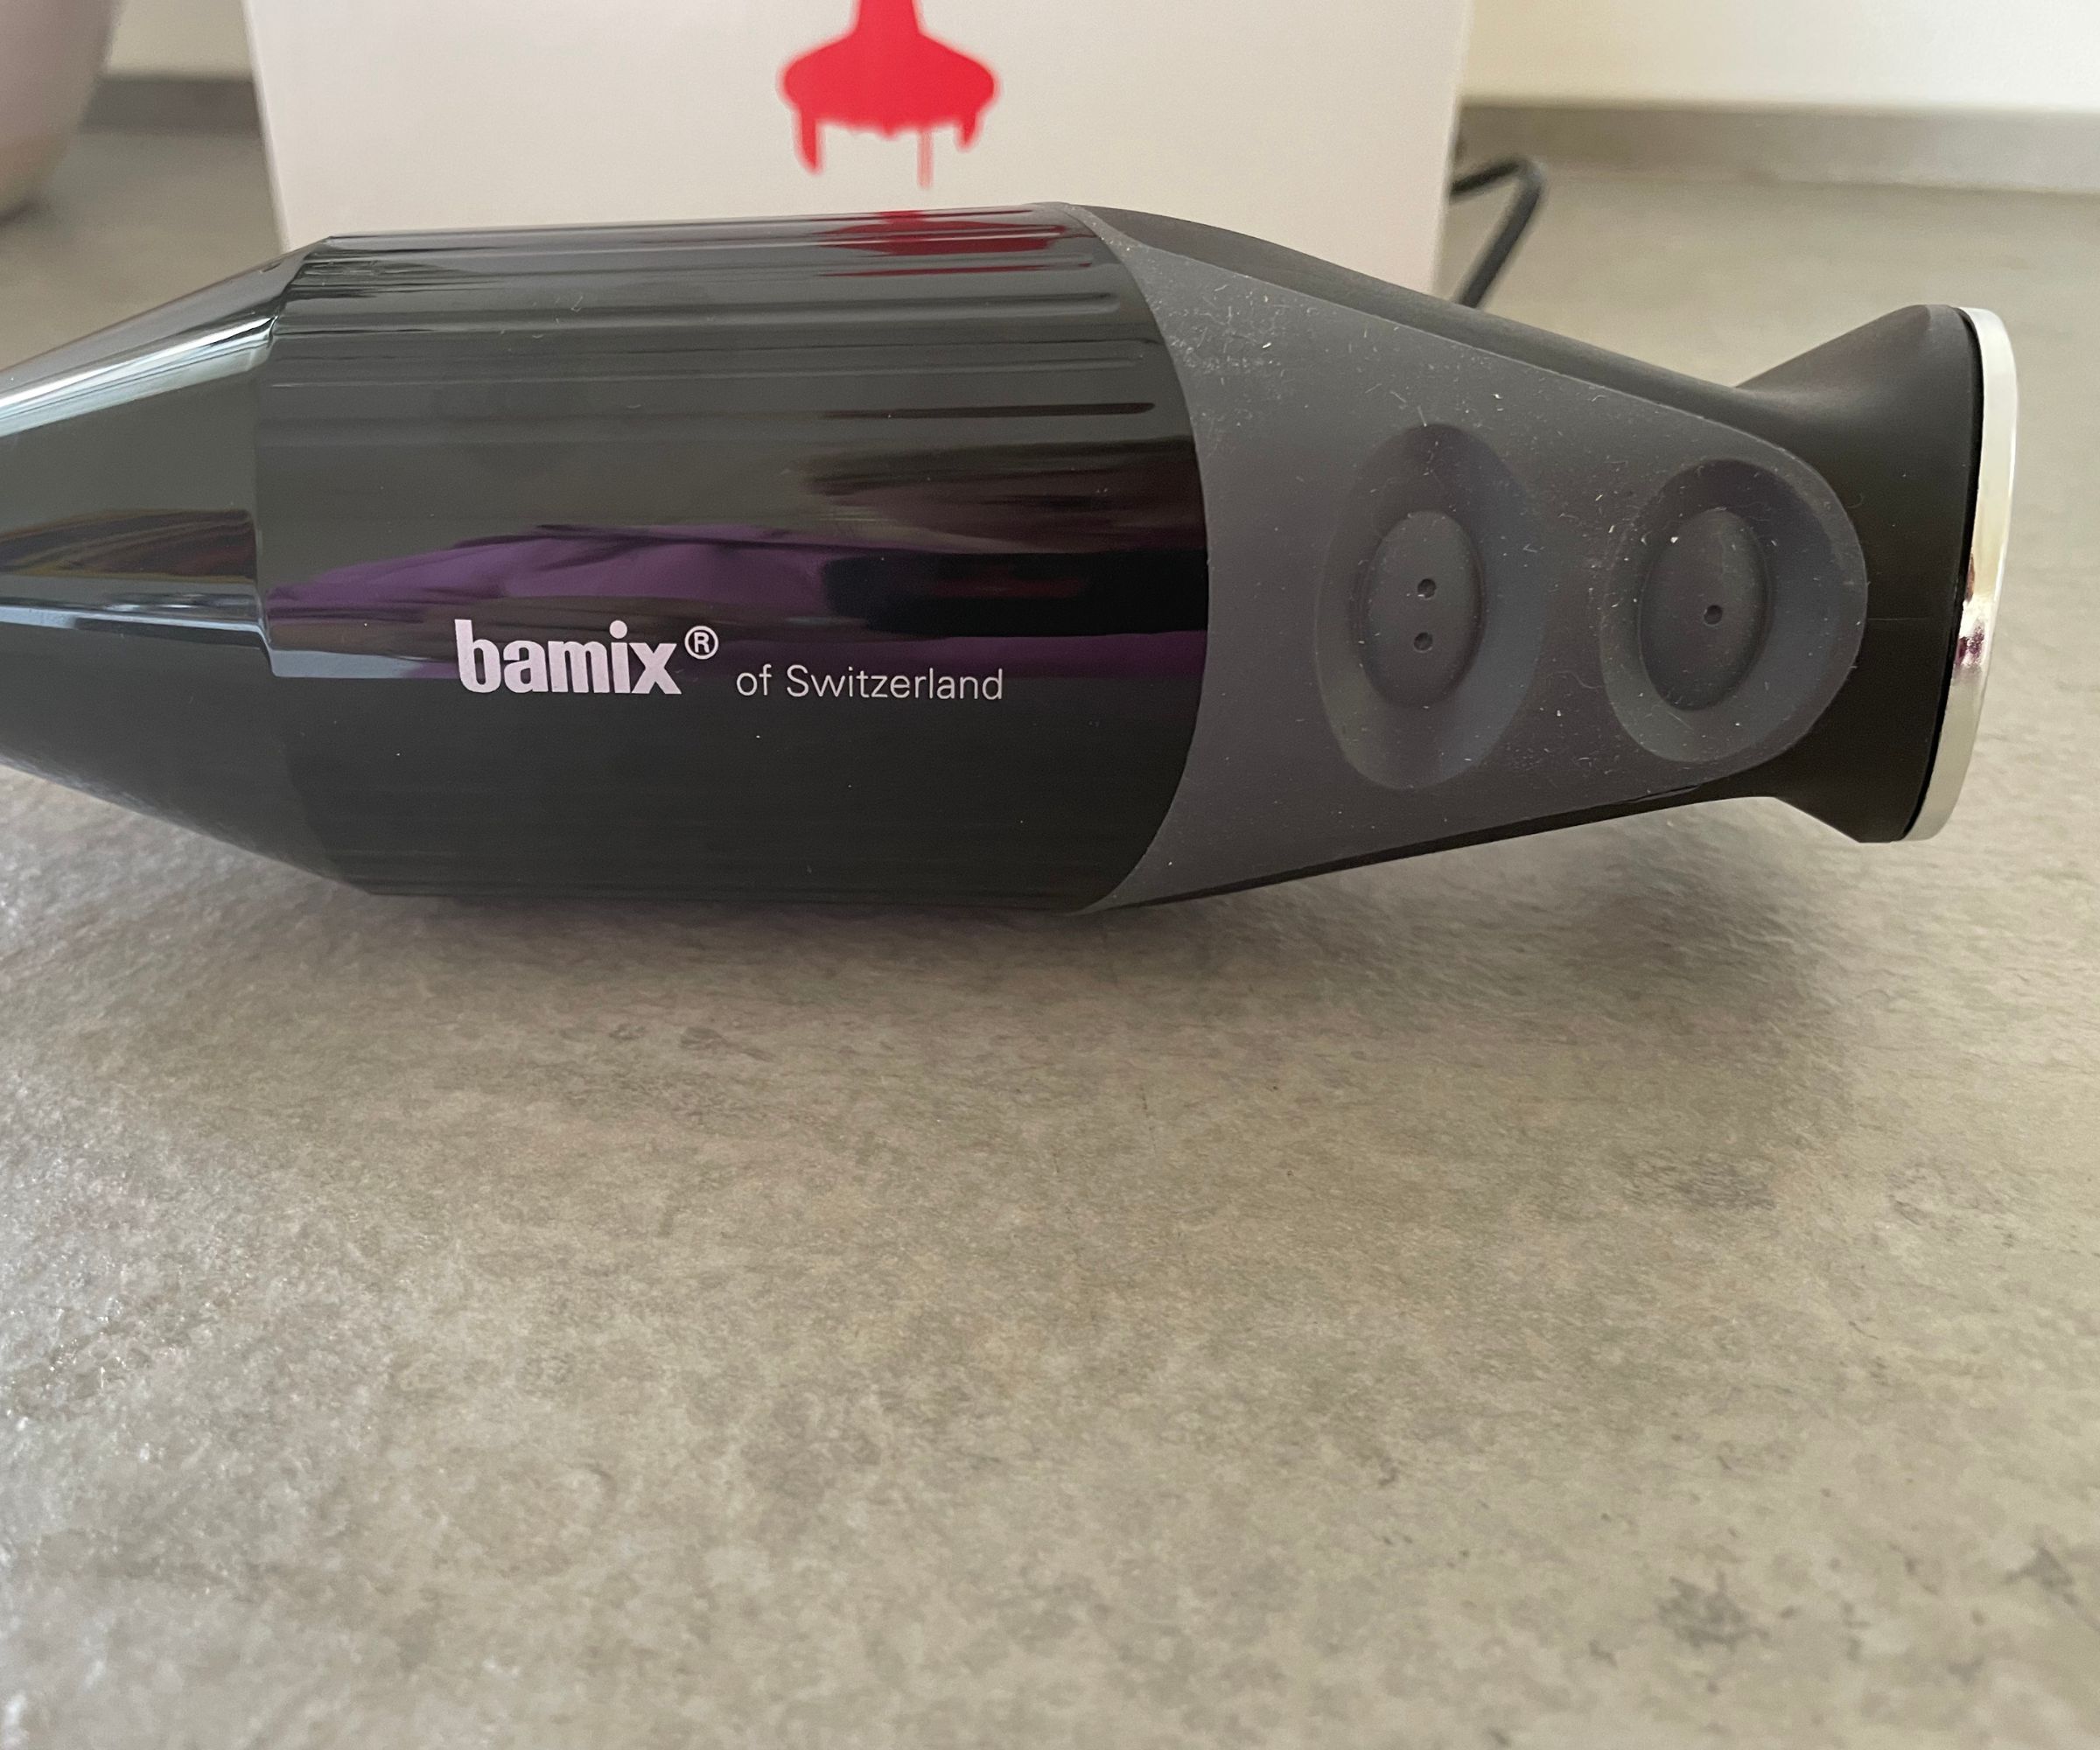 Bamix immersion blender controls